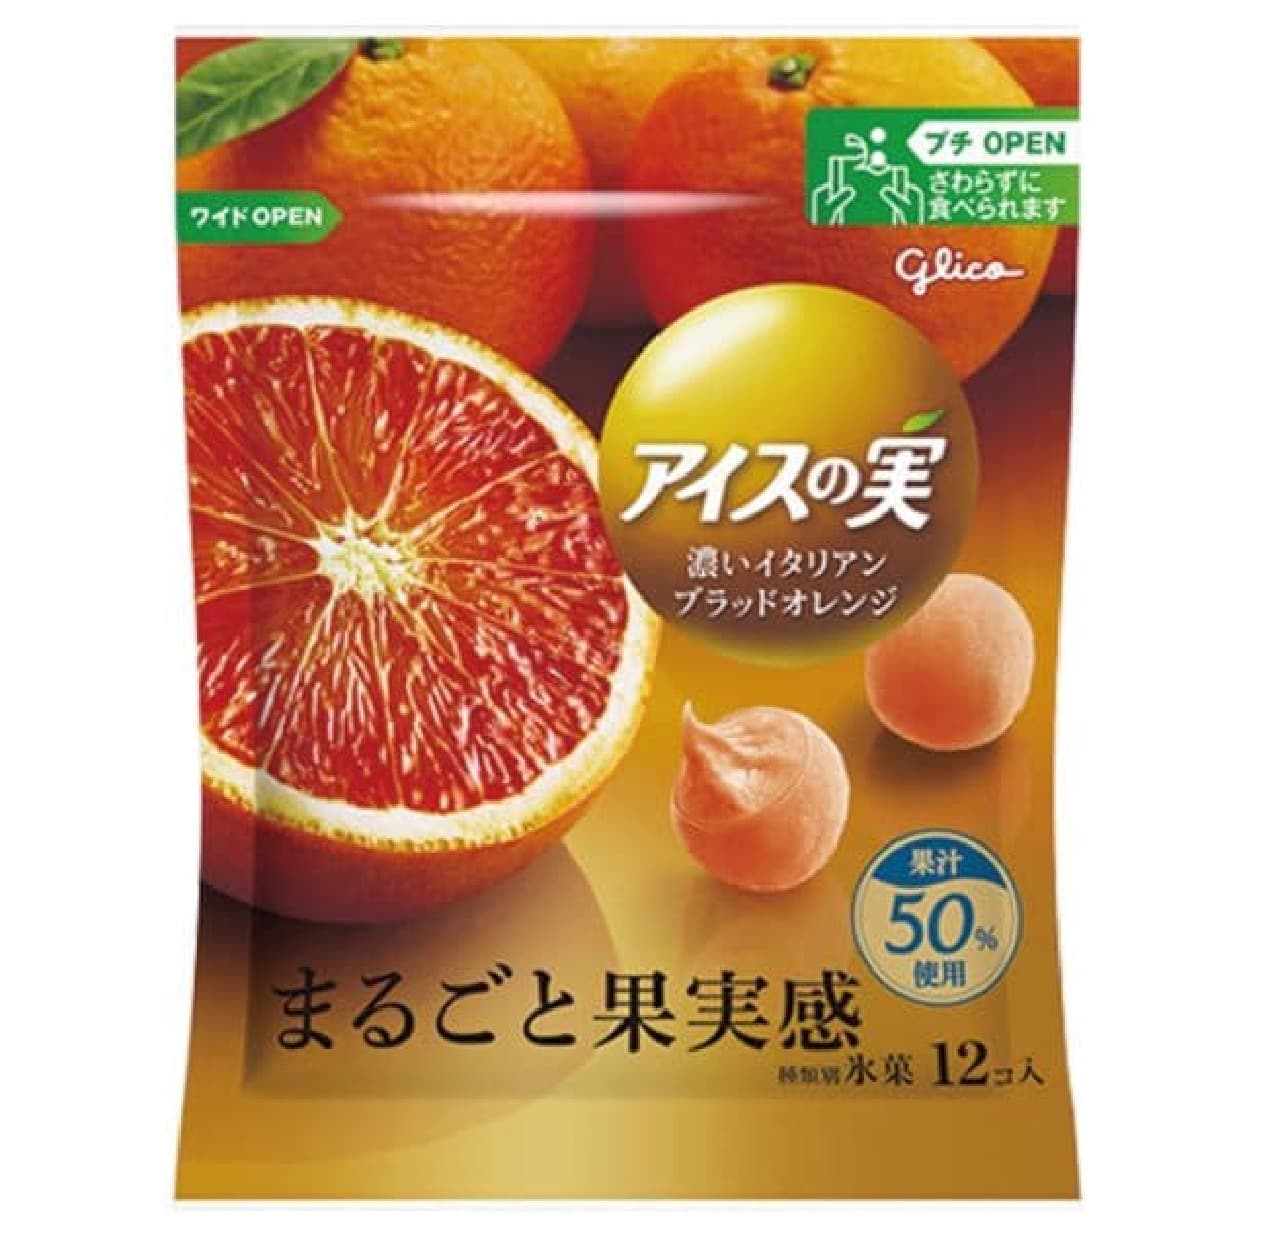 ファミリーマート「グリコ アイスの実 濃いイタリアンブラッドオレンジ」